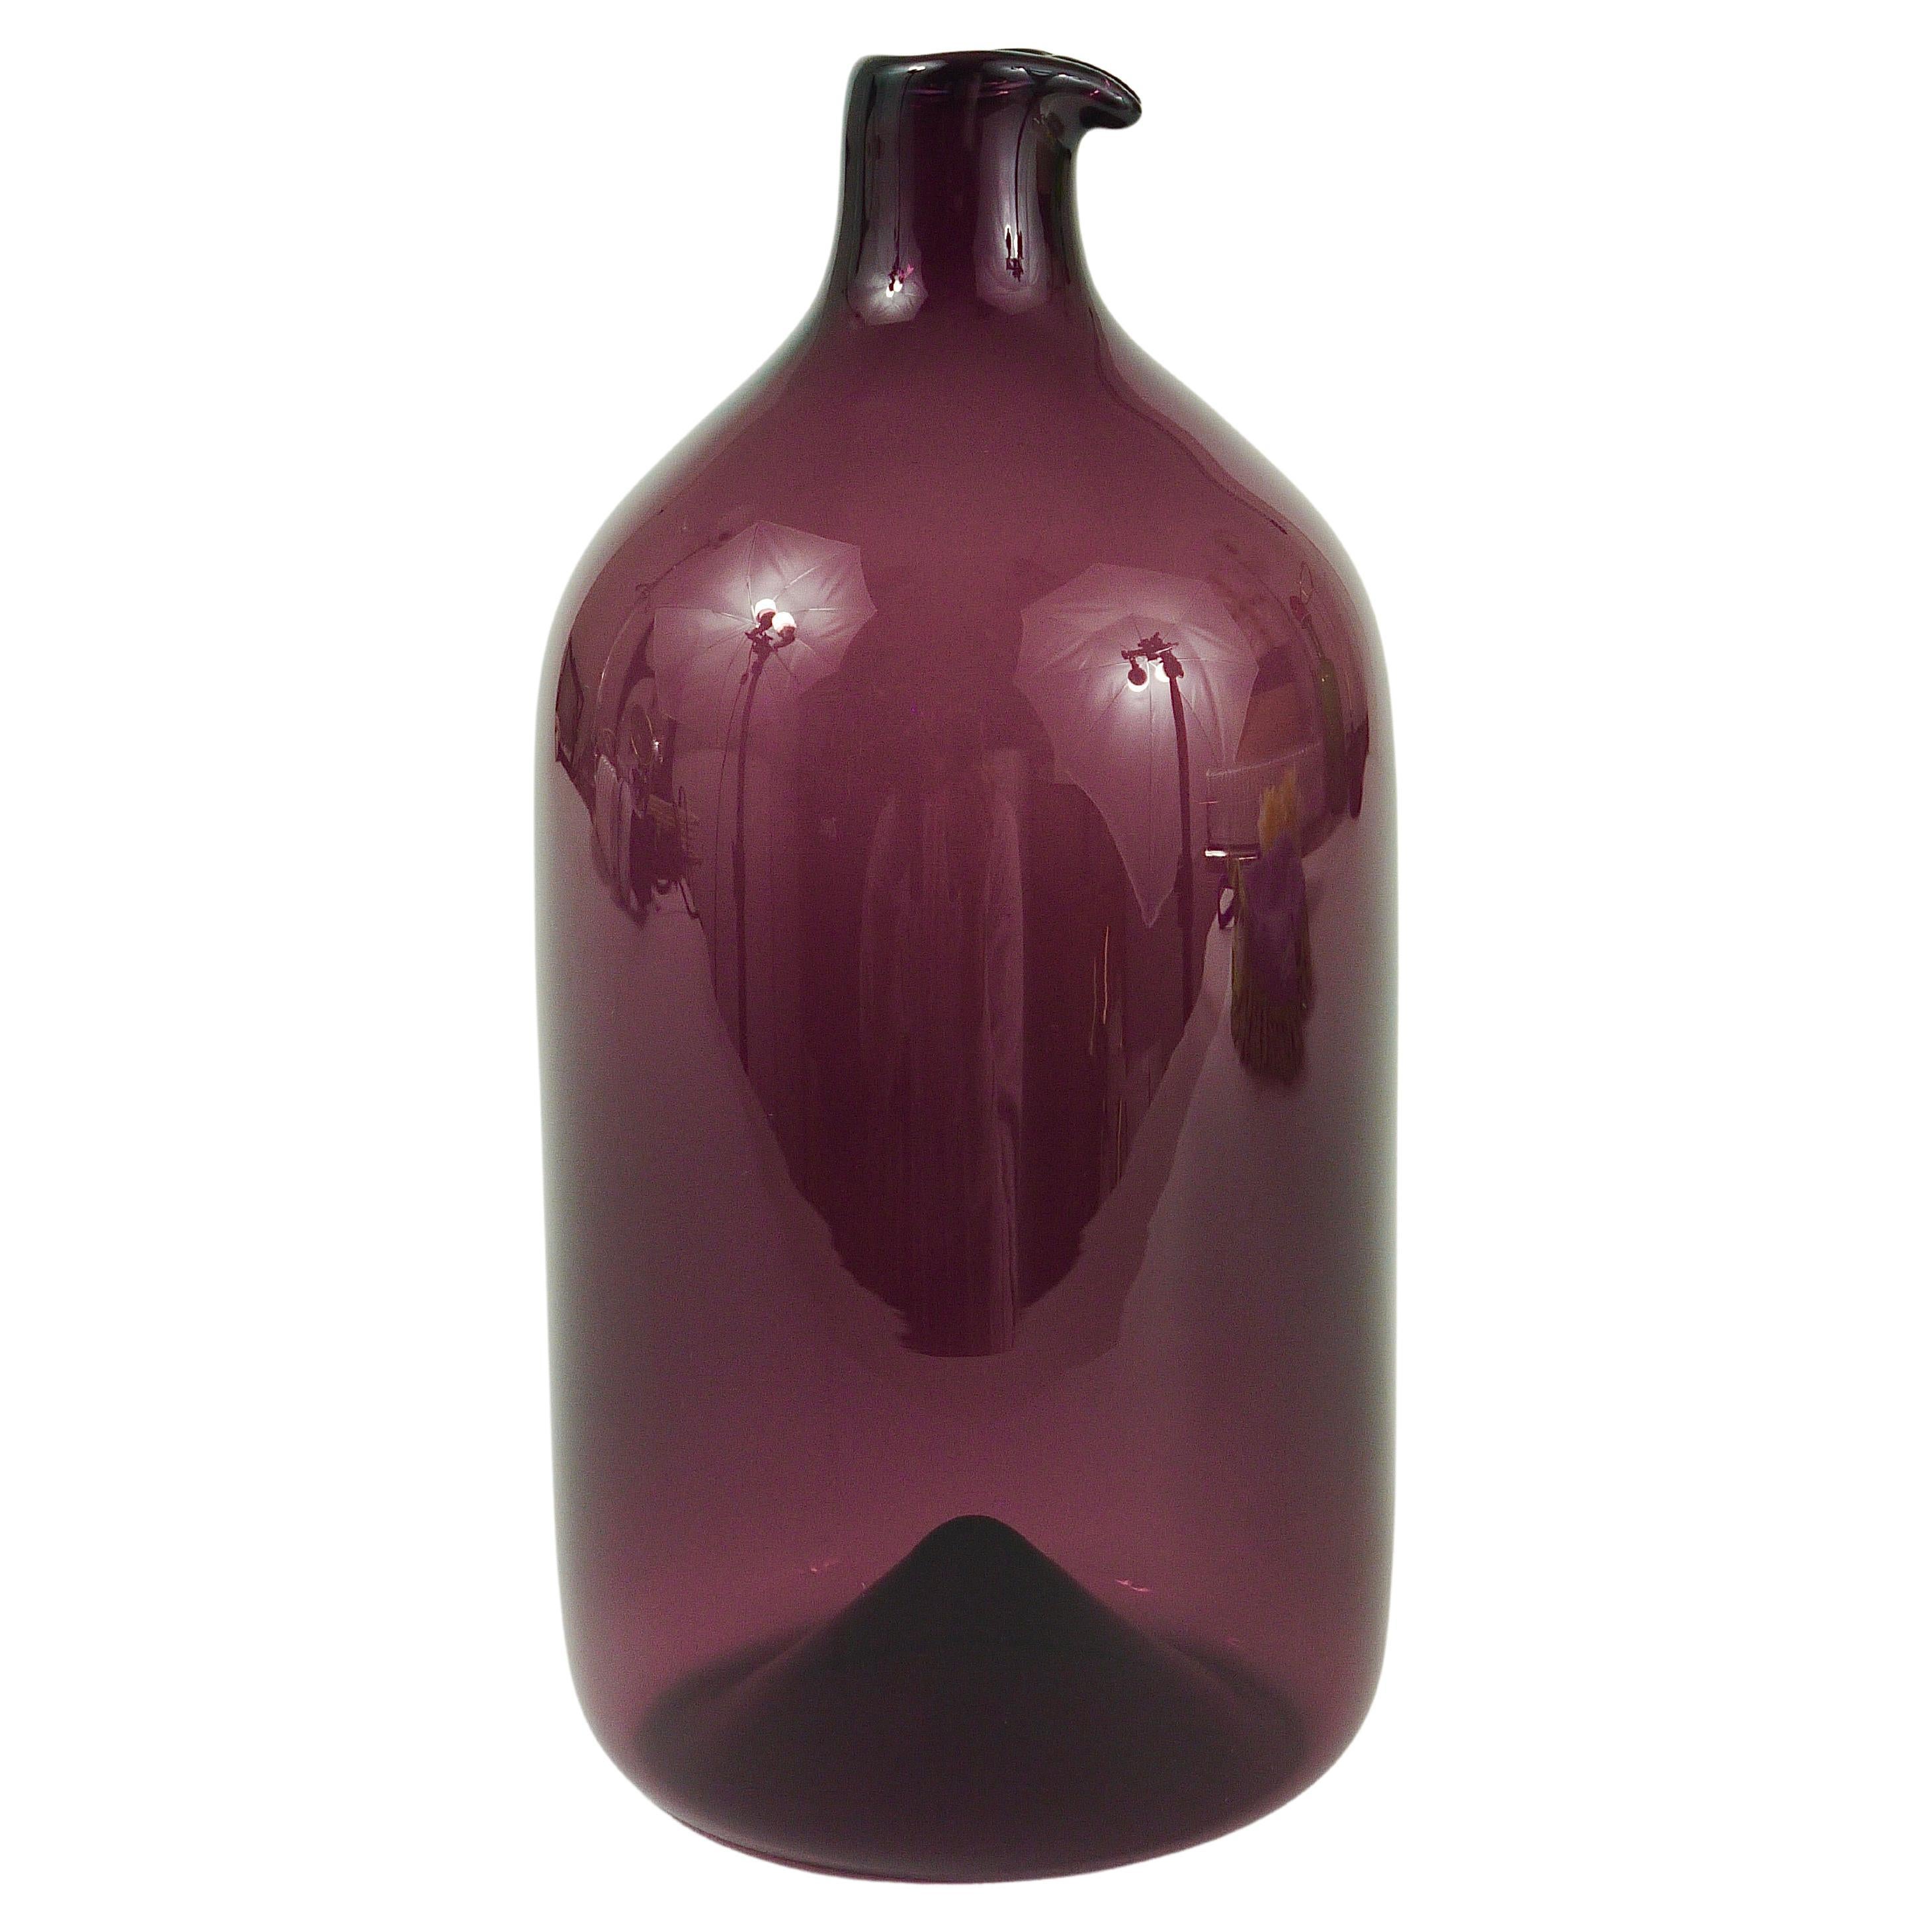 Signed Purple Timo Sarpaneva Pullo Bird Bottle Glass Vase, Iittala, Finland